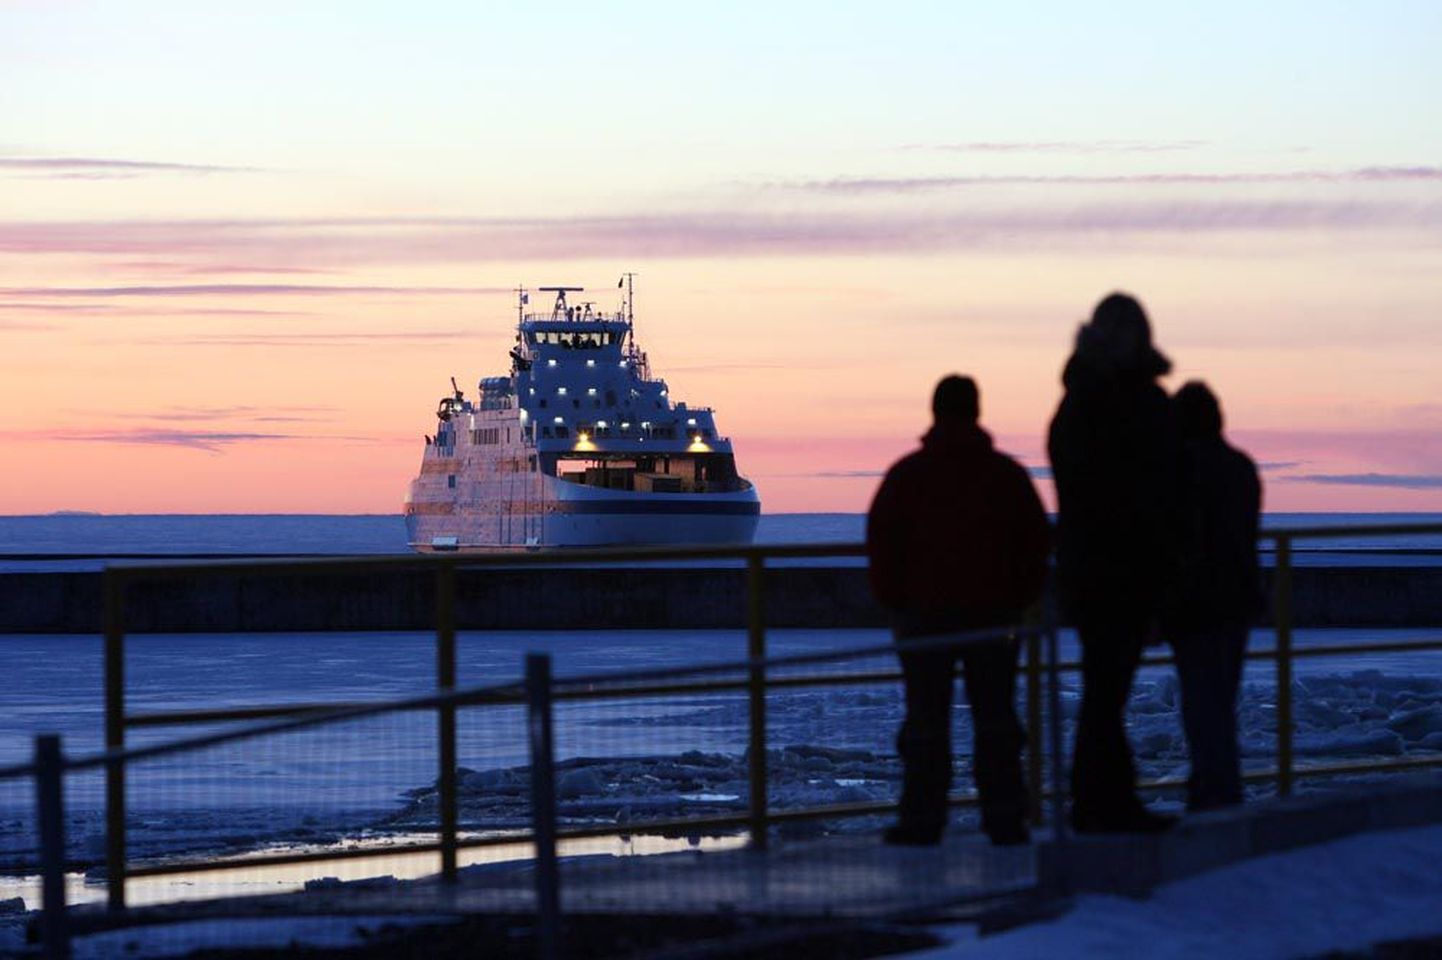 Täna Saaremaa Laevakompaniile üle antav parvlaev Saaremaa on suures osas identne fotol oleva parvlaevaga Muhumaa.